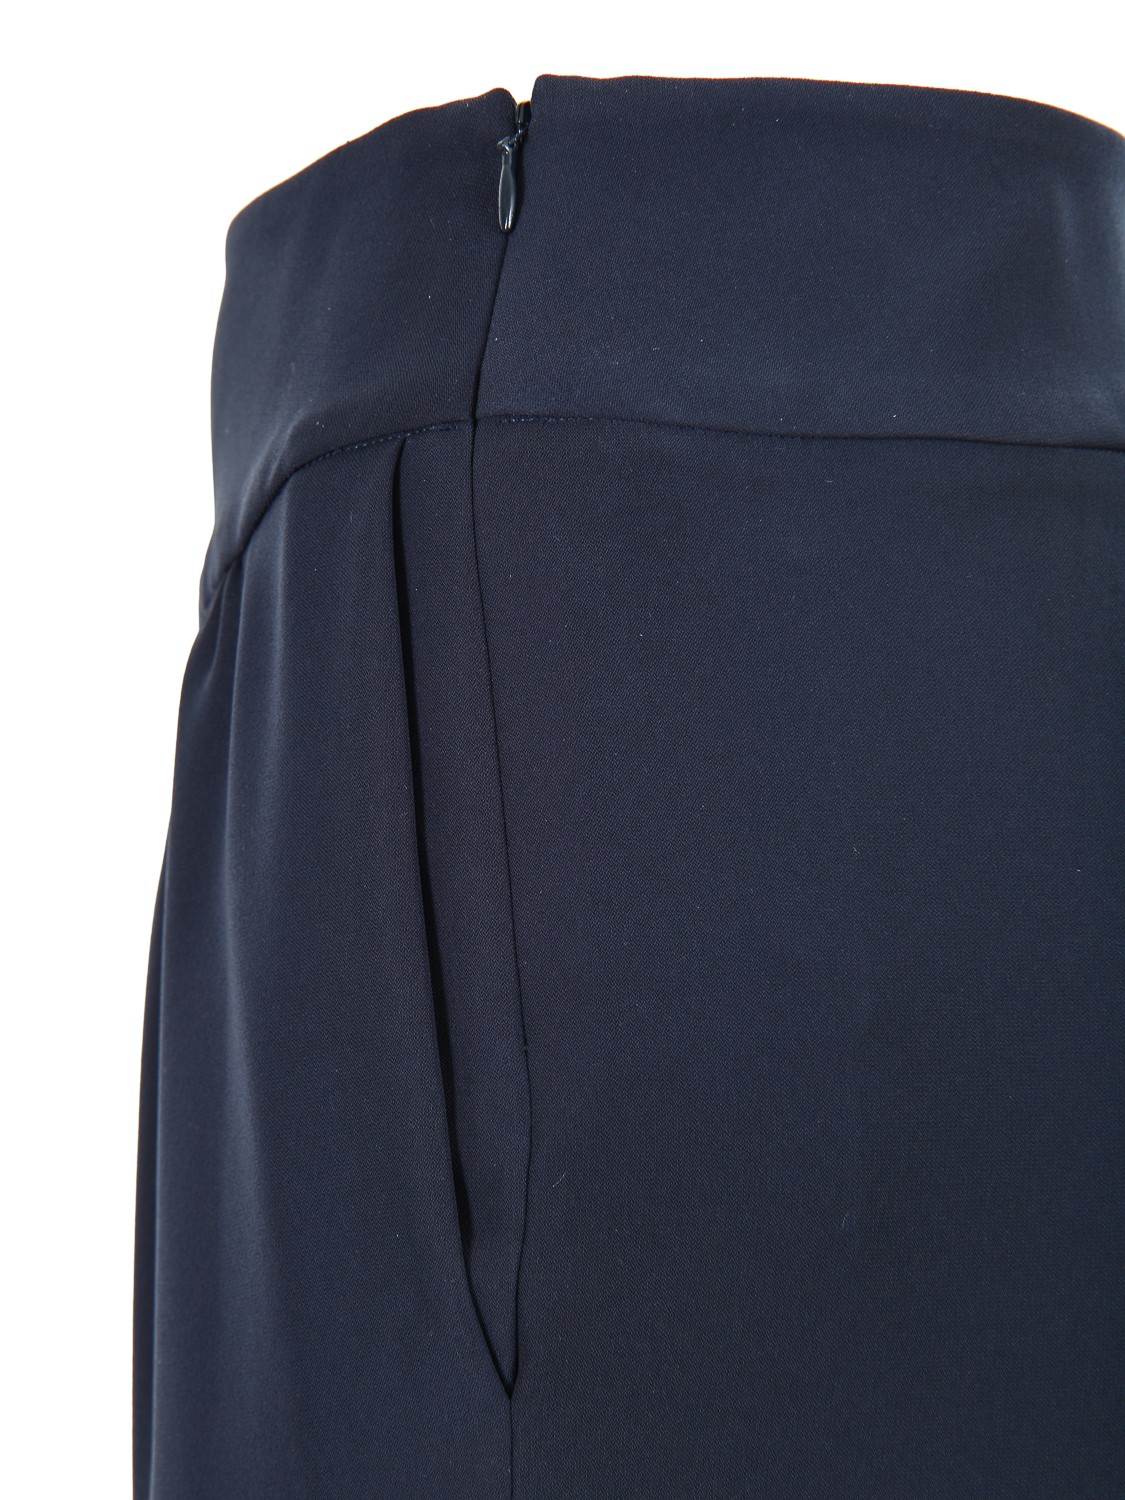 shop EMPORIO ARMANI  Pantalone: Emporio Armani pantalone blu.
Vita alta con fascia.
Increspato.
Zip laterale.
Tasche anteriori a filetto.
Composizione: 100% poliestere.. WNP17T WM015-920 number 6900417